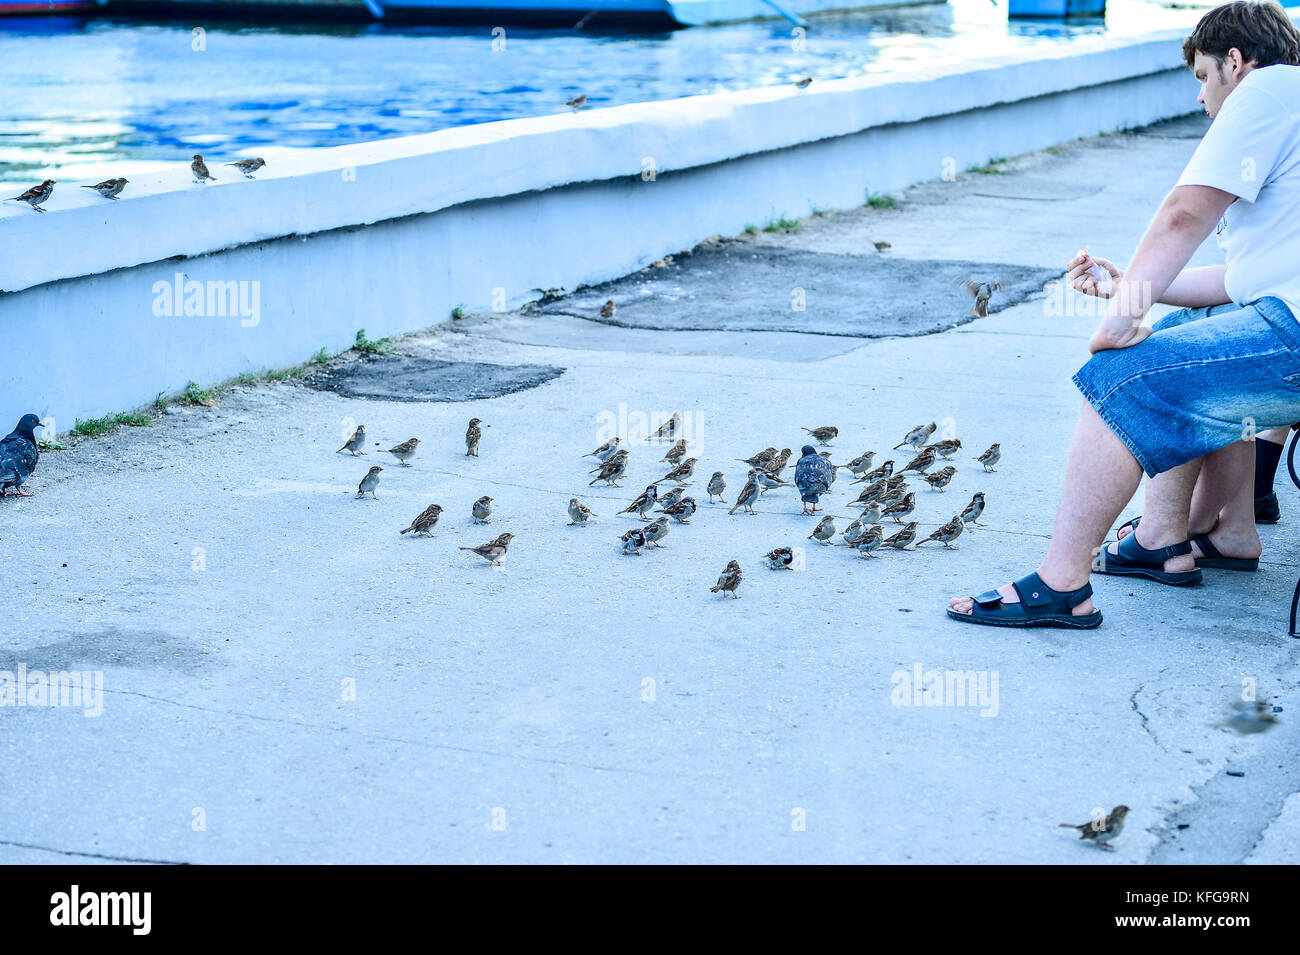 Rusia, saratov - 09.08.2017: hombre desconocido se sienta en un banco y alimenta palomas en el terraplén del río Volga en Saratov 08.09.2017, en Rusia. Foto de stock